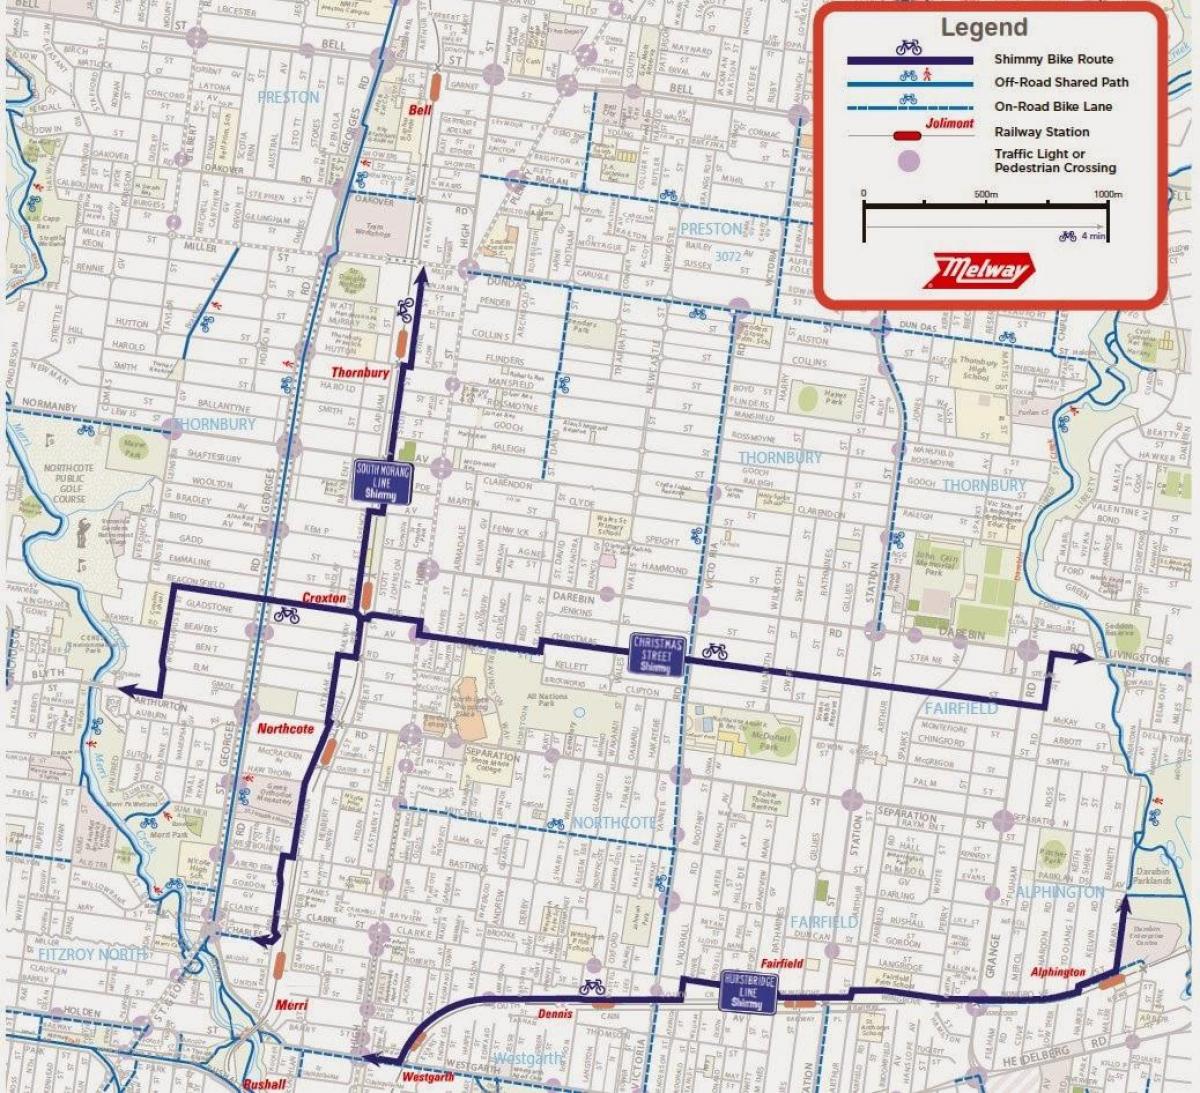 χάρτης της Μελβούρνης μερίδιο ποδήλατο